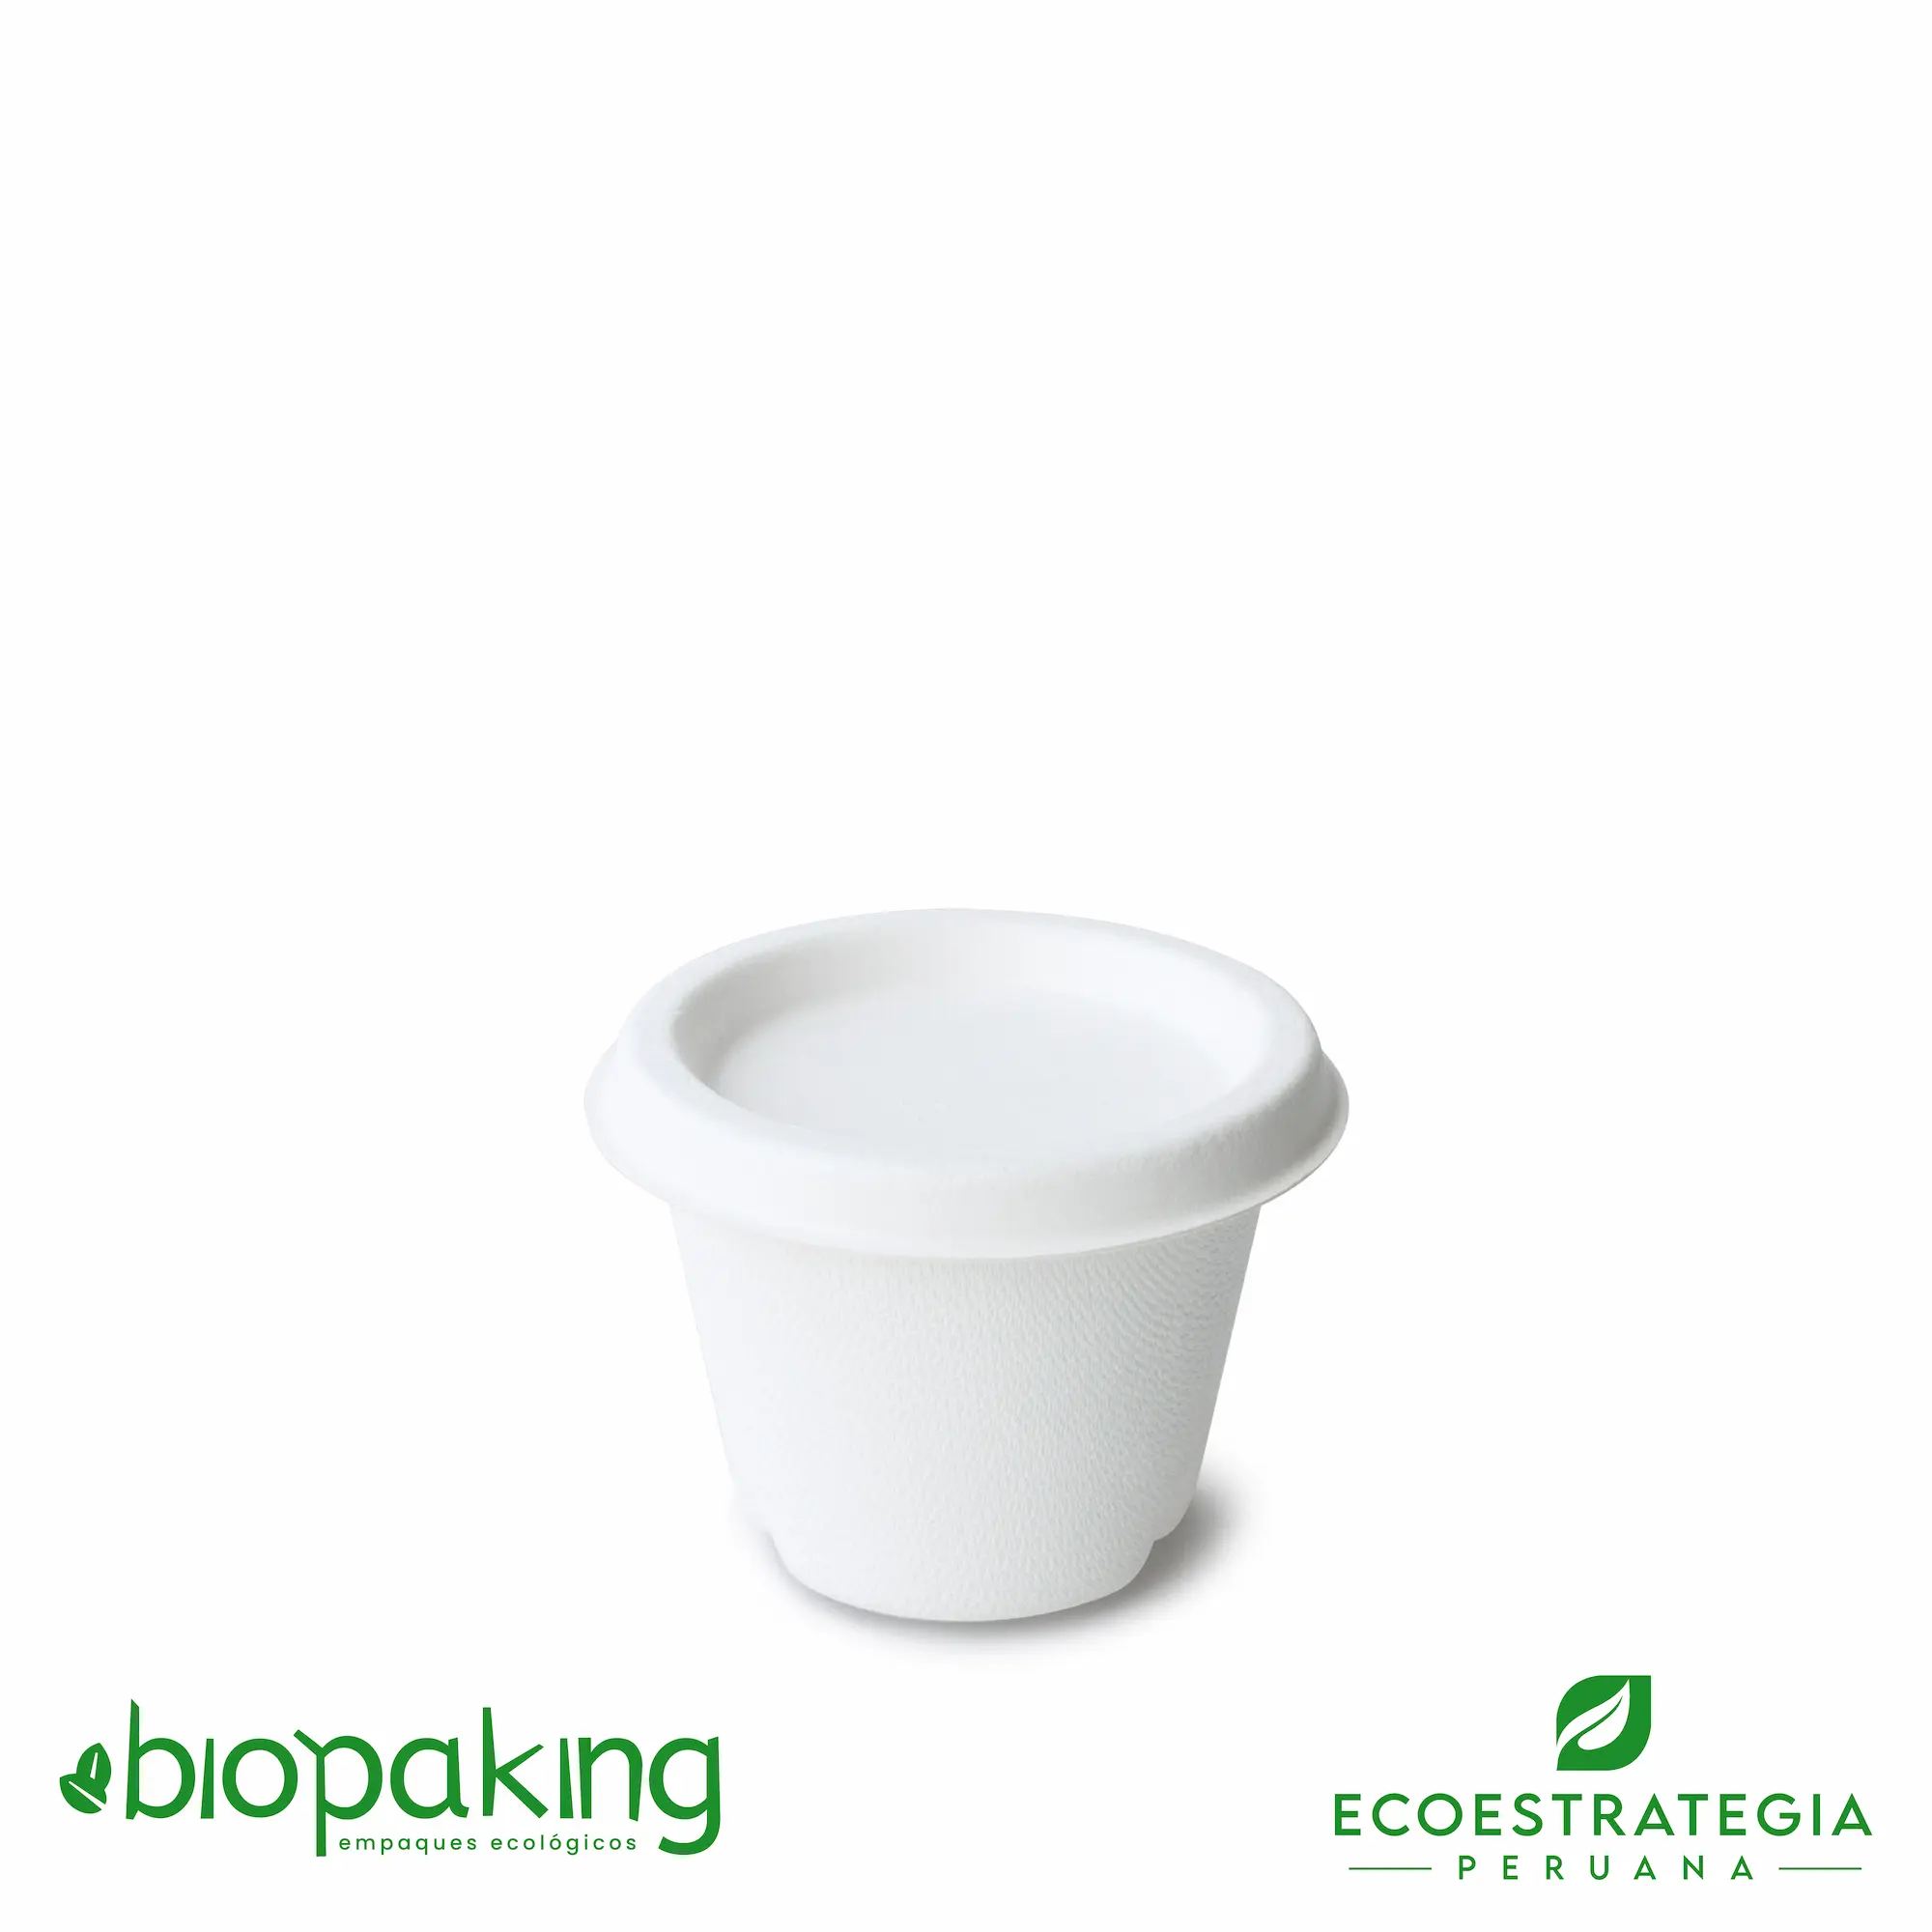 Este envase para cremas de 4oz, es un productos de material biodegradable hecho a base del bagazo de caña de azúcar. Cotiza tus ajiceros, salseros y pirotines.